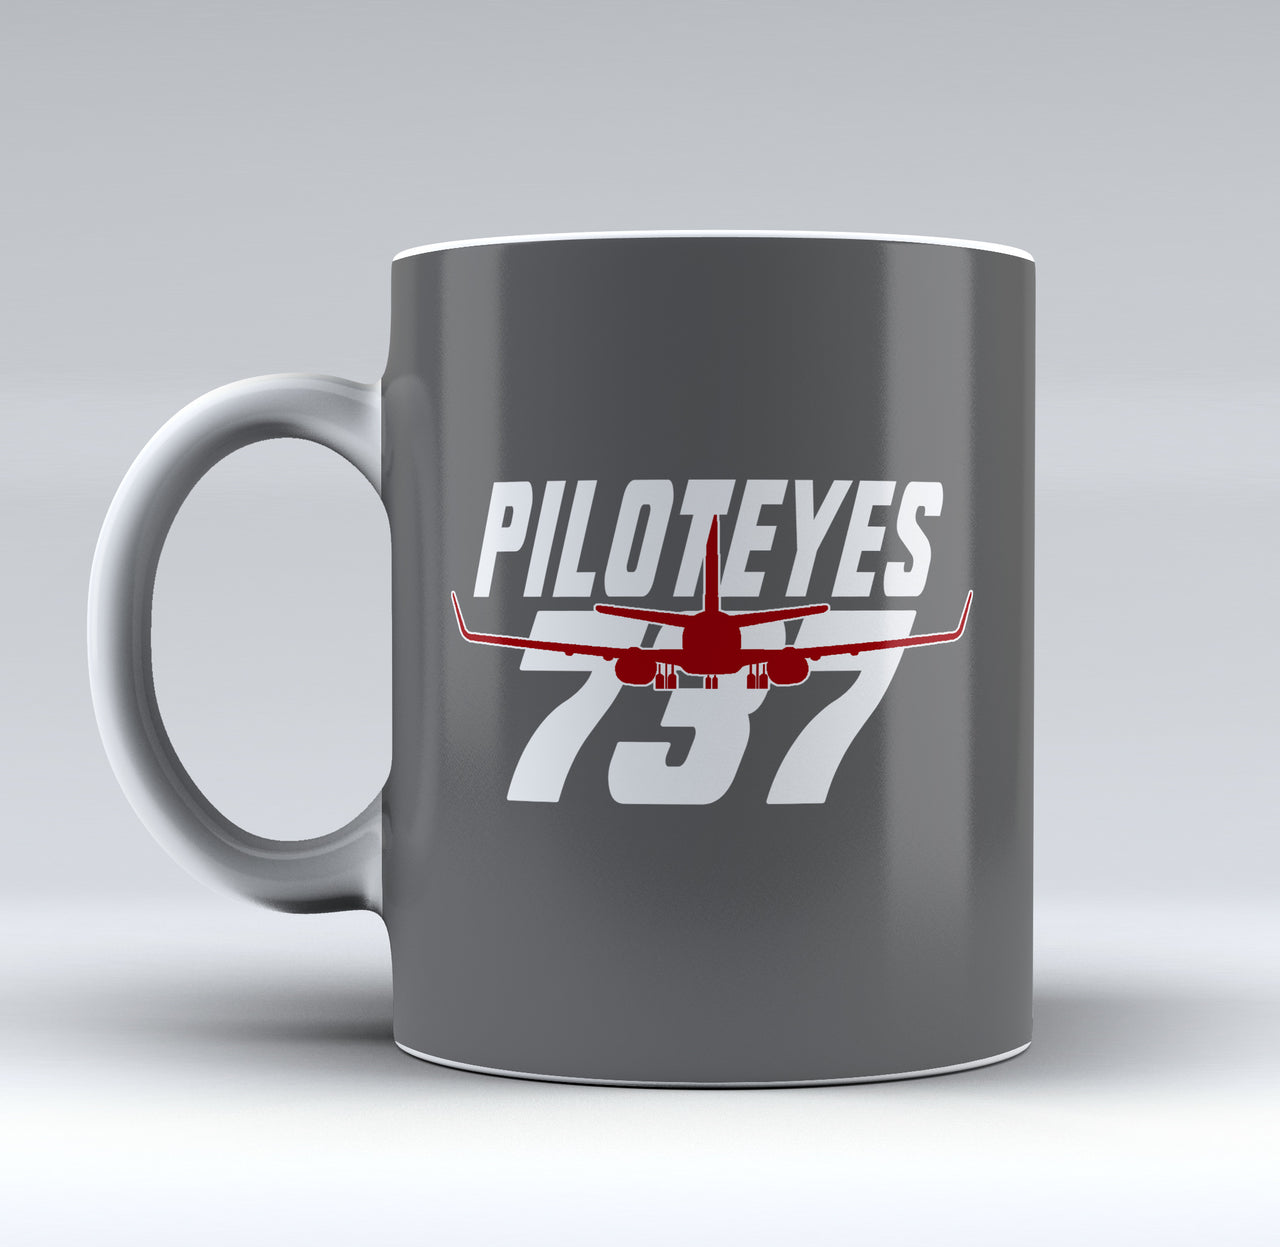 Amazing Piloteyes737 Designed Mugs